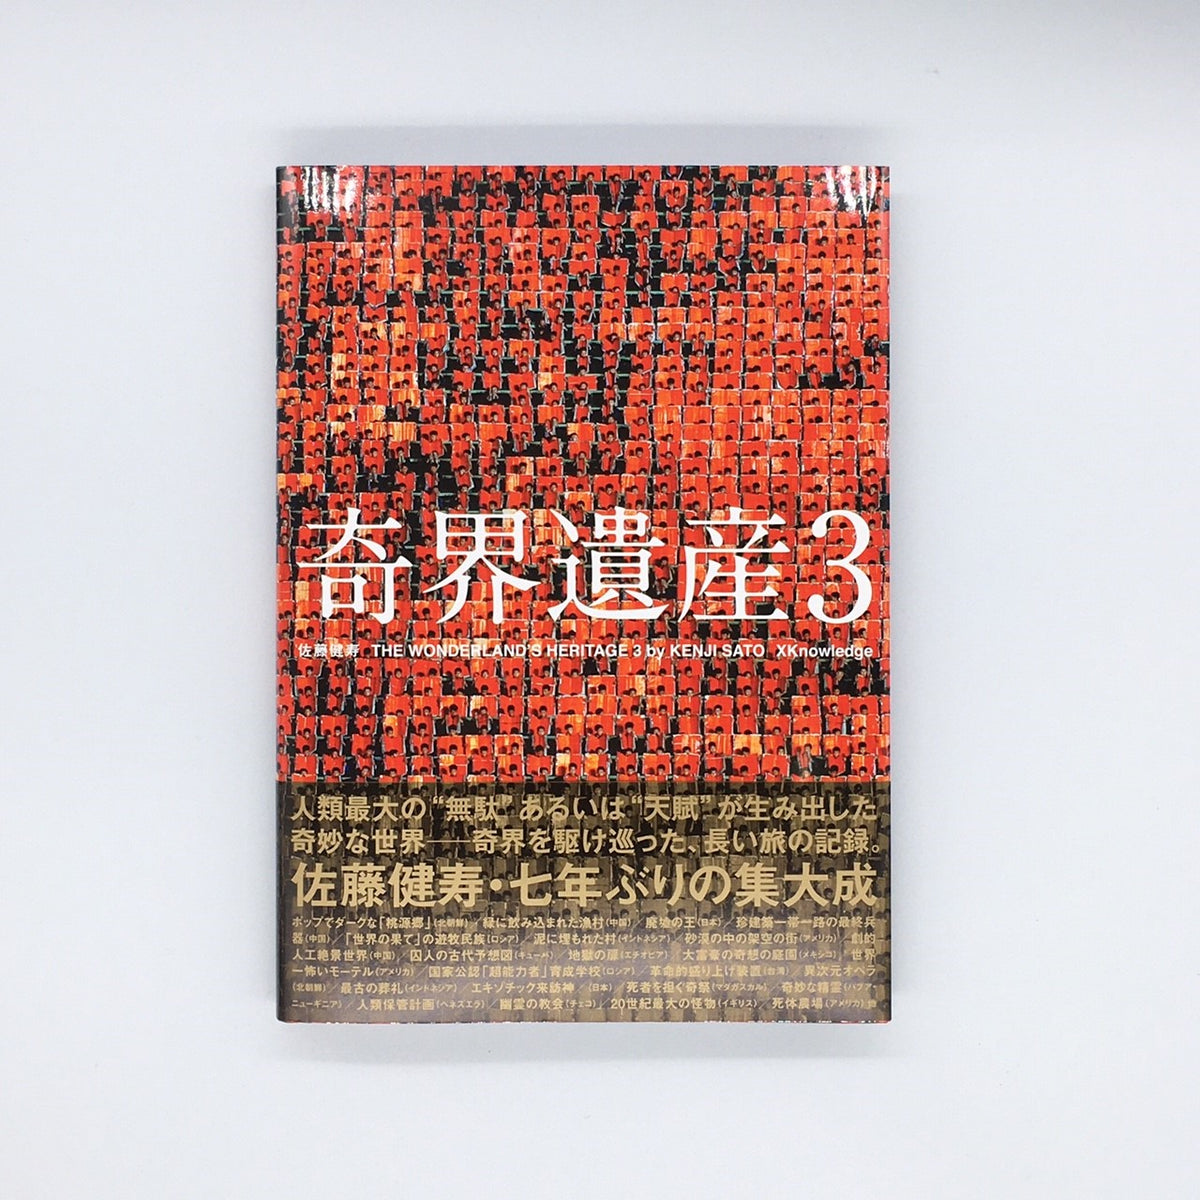 佐藤健寿『奇界遺産3』 – 青山ブックセンター本店